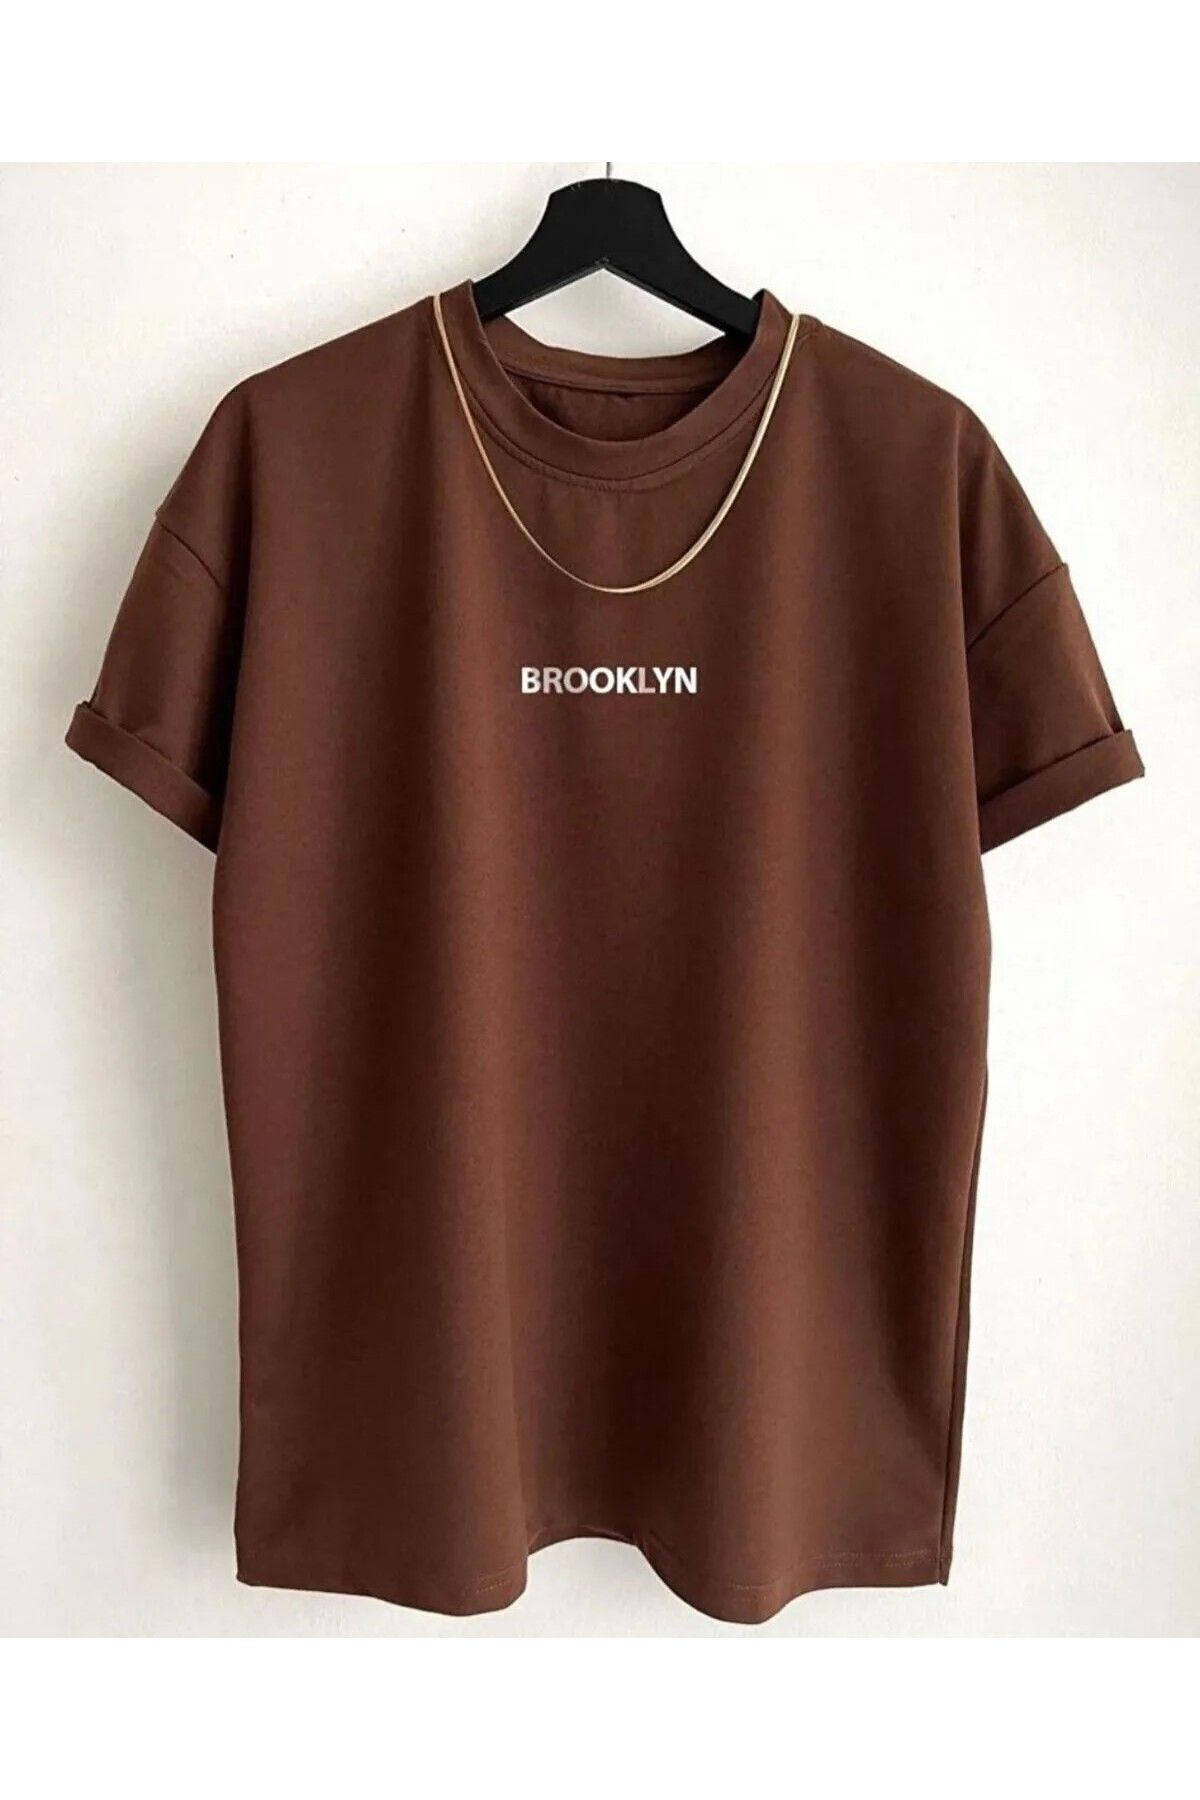 HIRSCH Unisex Kahverengi Brooklyn Baskılı T-shirt